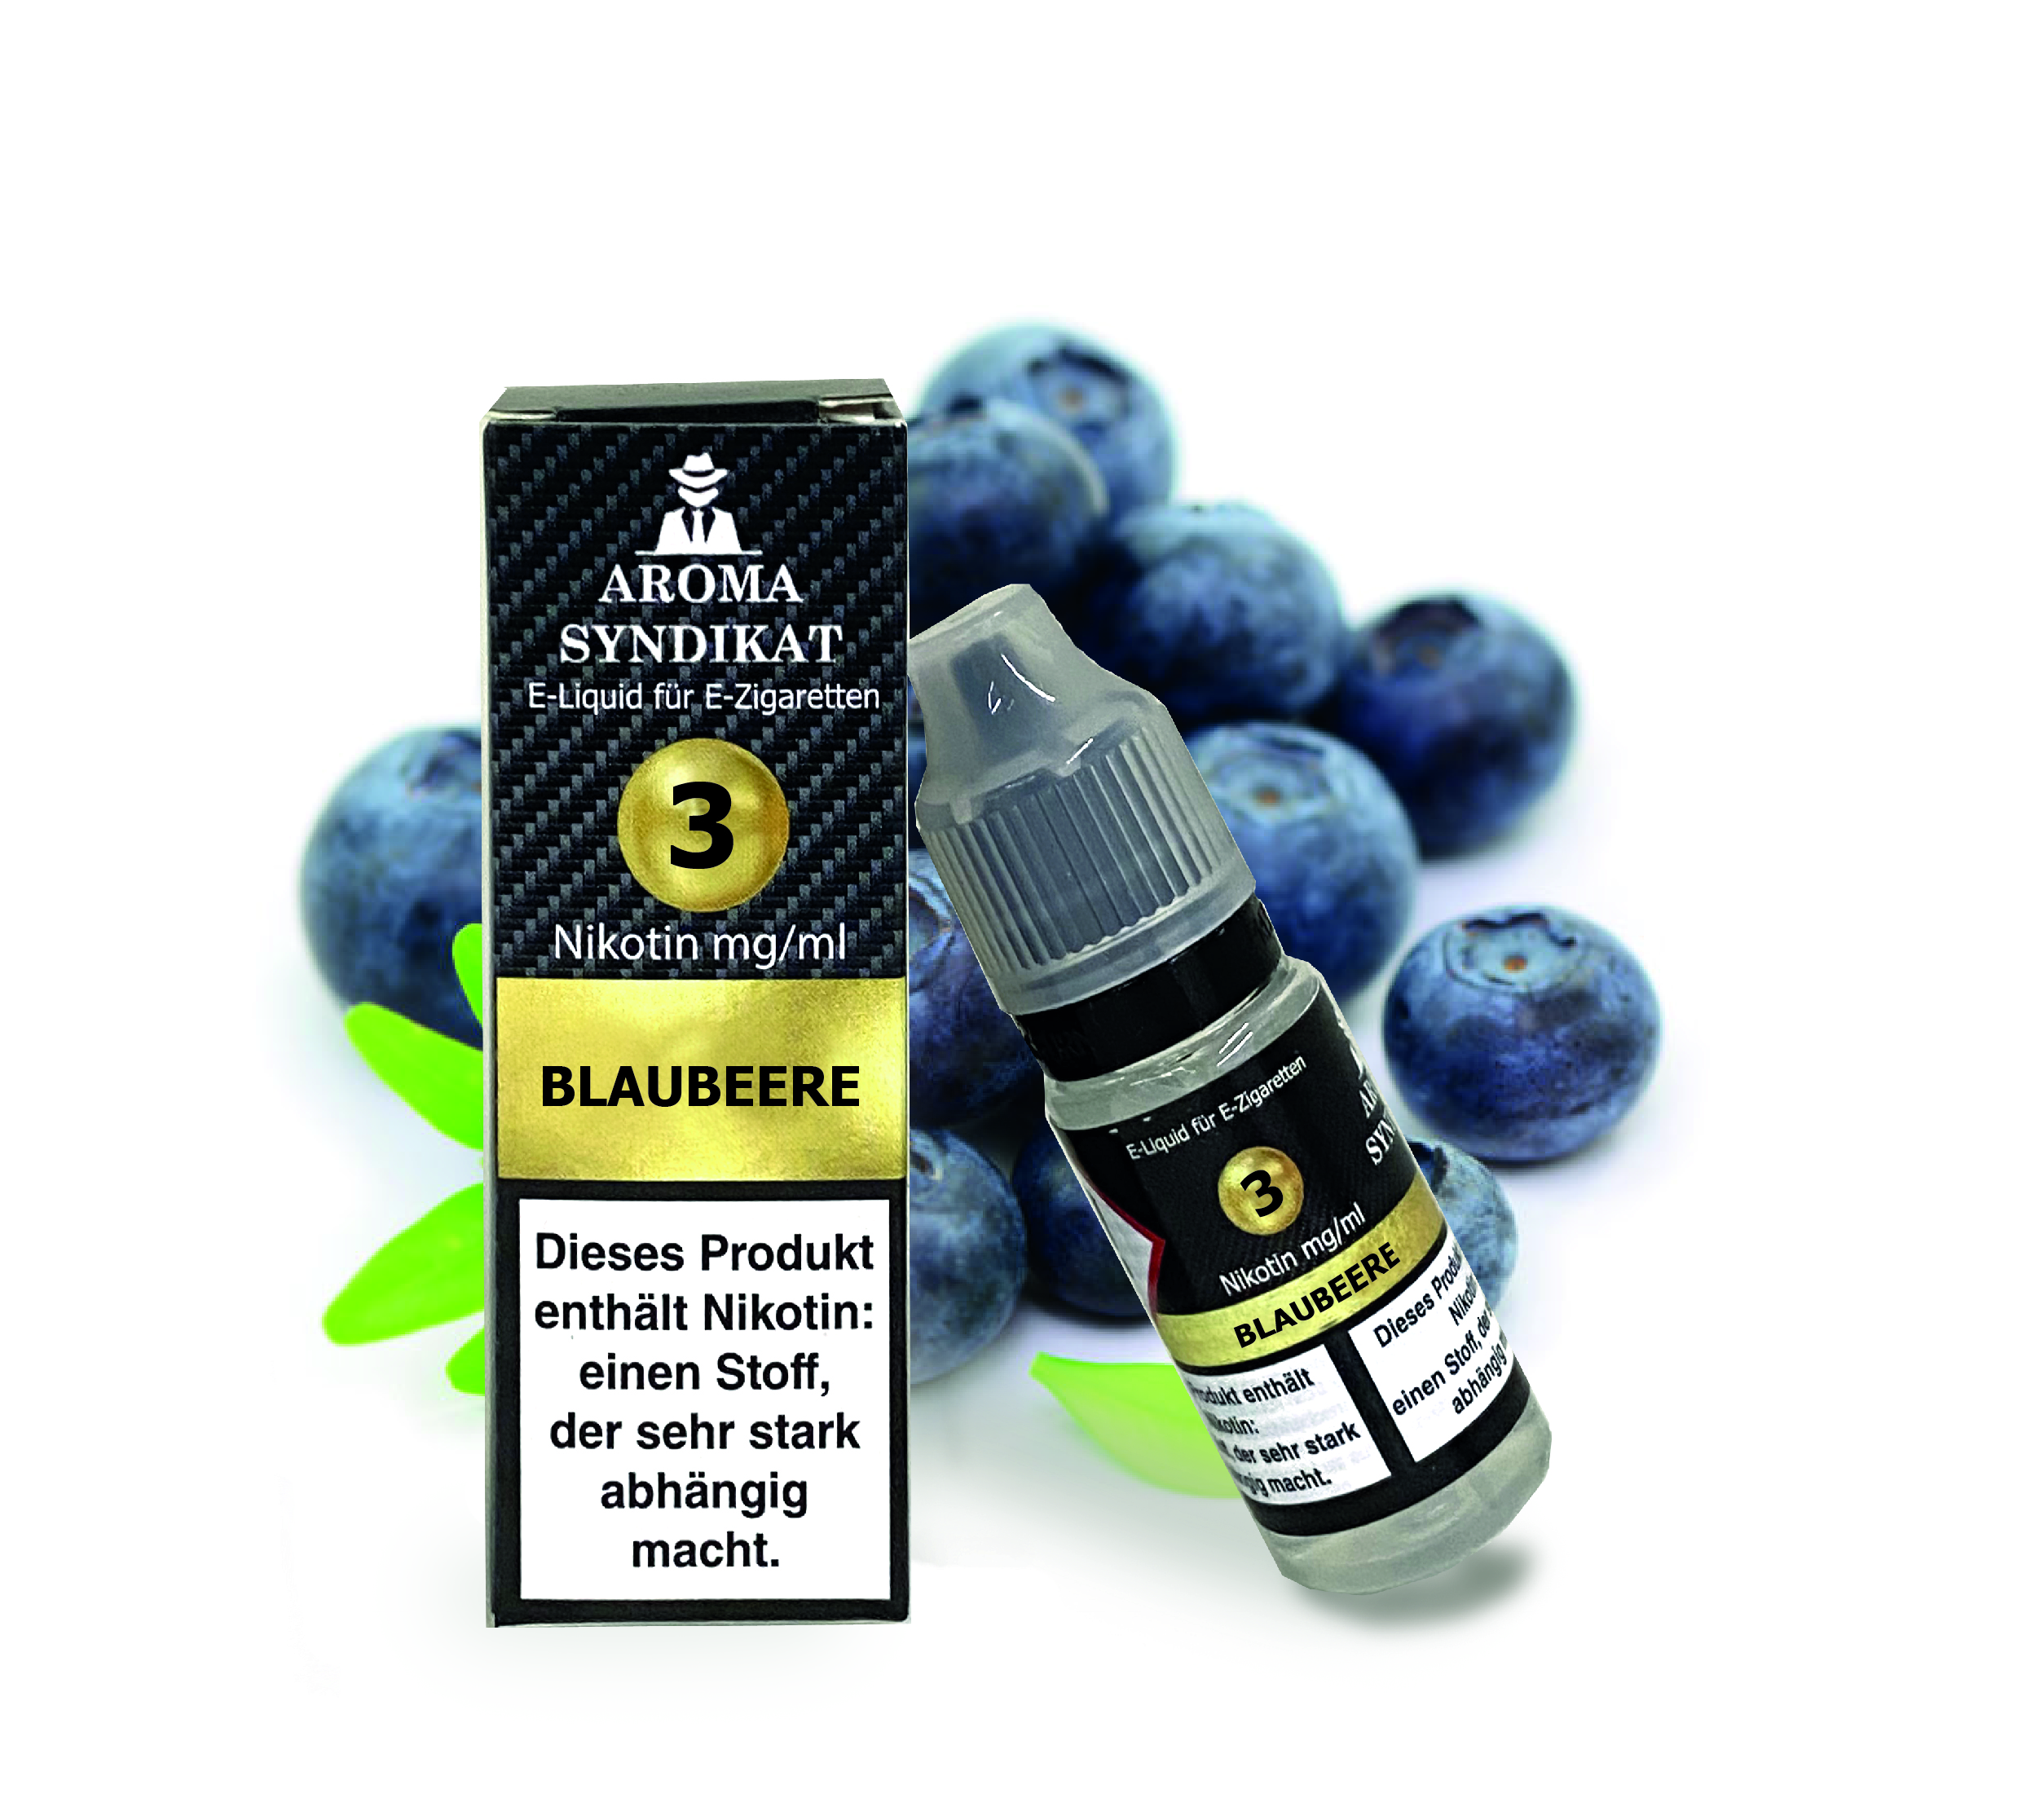 Blaubeere - E-liquid für E-Zigaretten